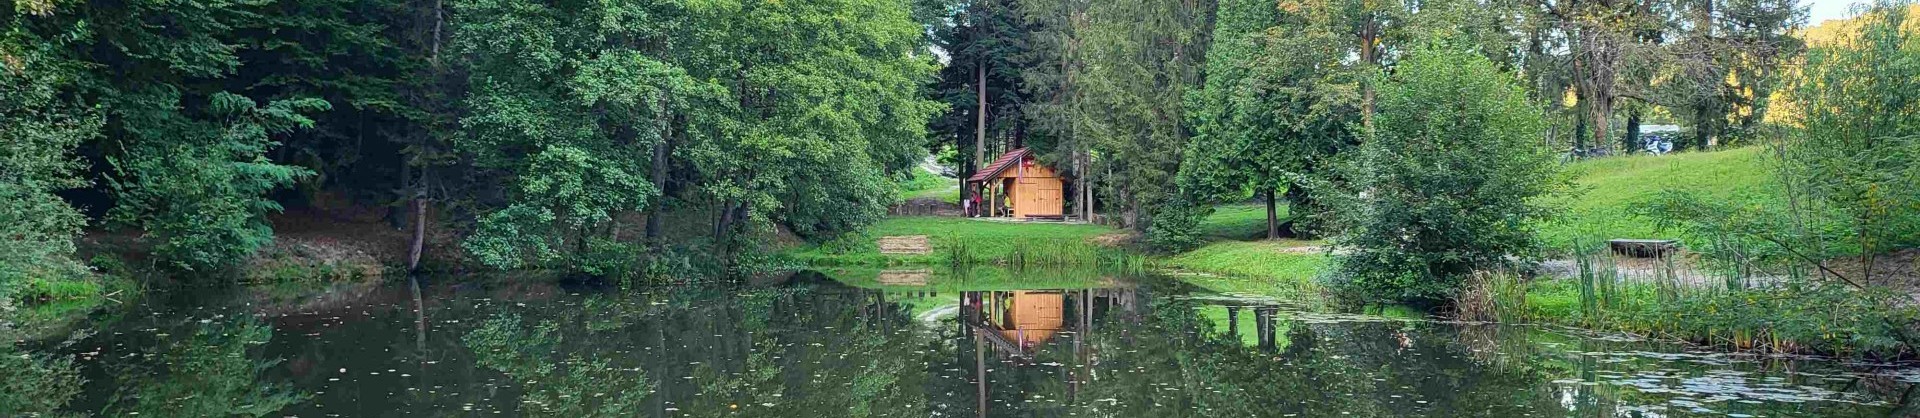 Tajht novi kloster polzela jezera slovenije slovenska jezera moja jezera manca korelc 1 sl